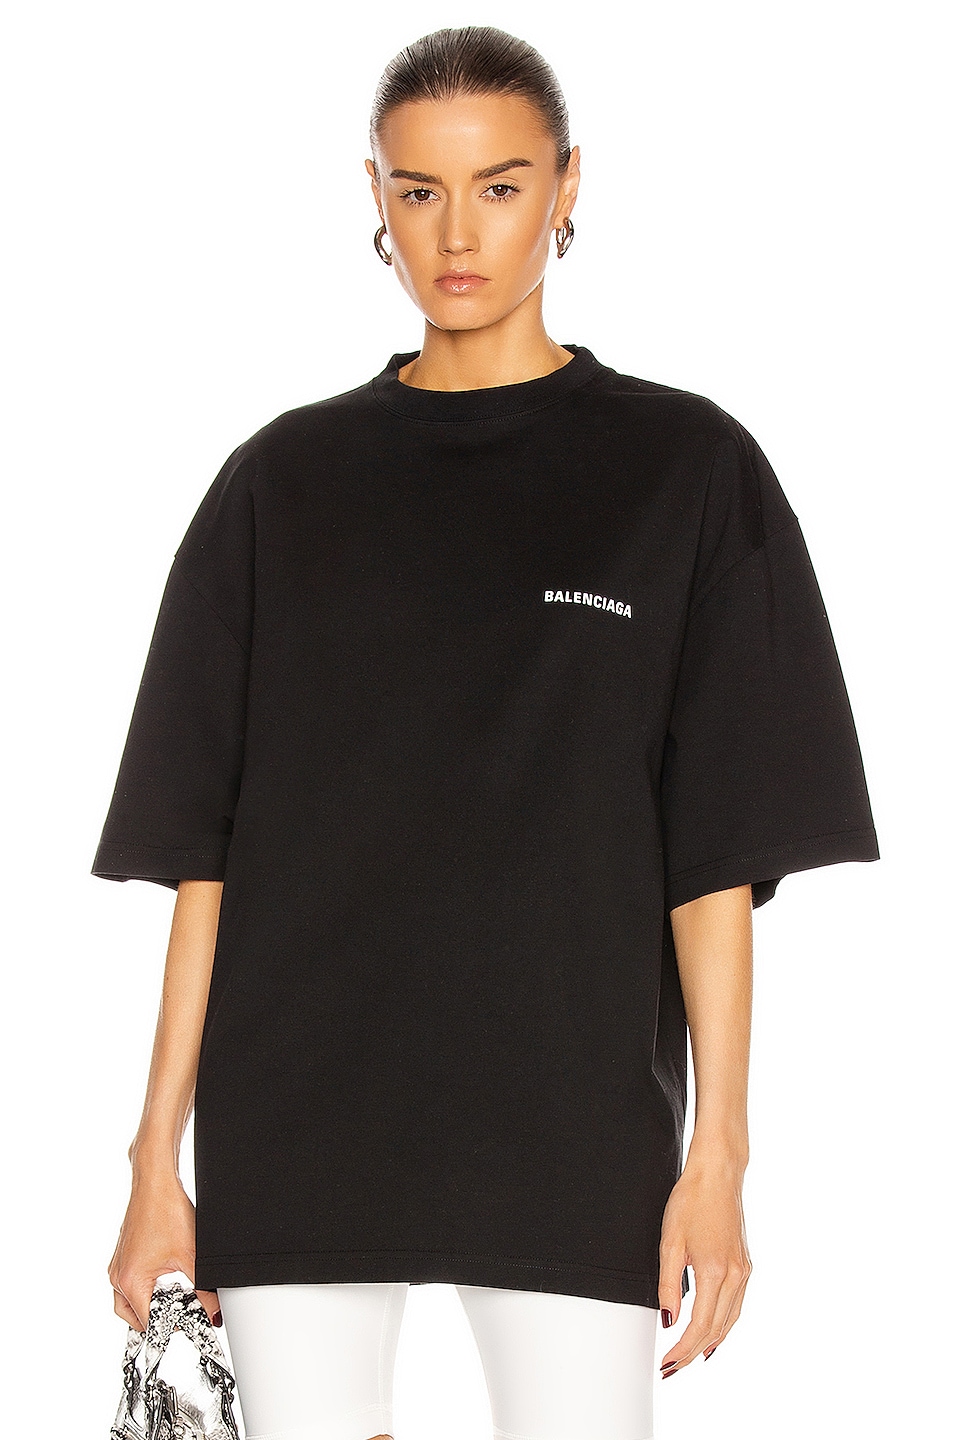 Balenciaga Defile XL Fit T Shirt in Black & White | FWRD